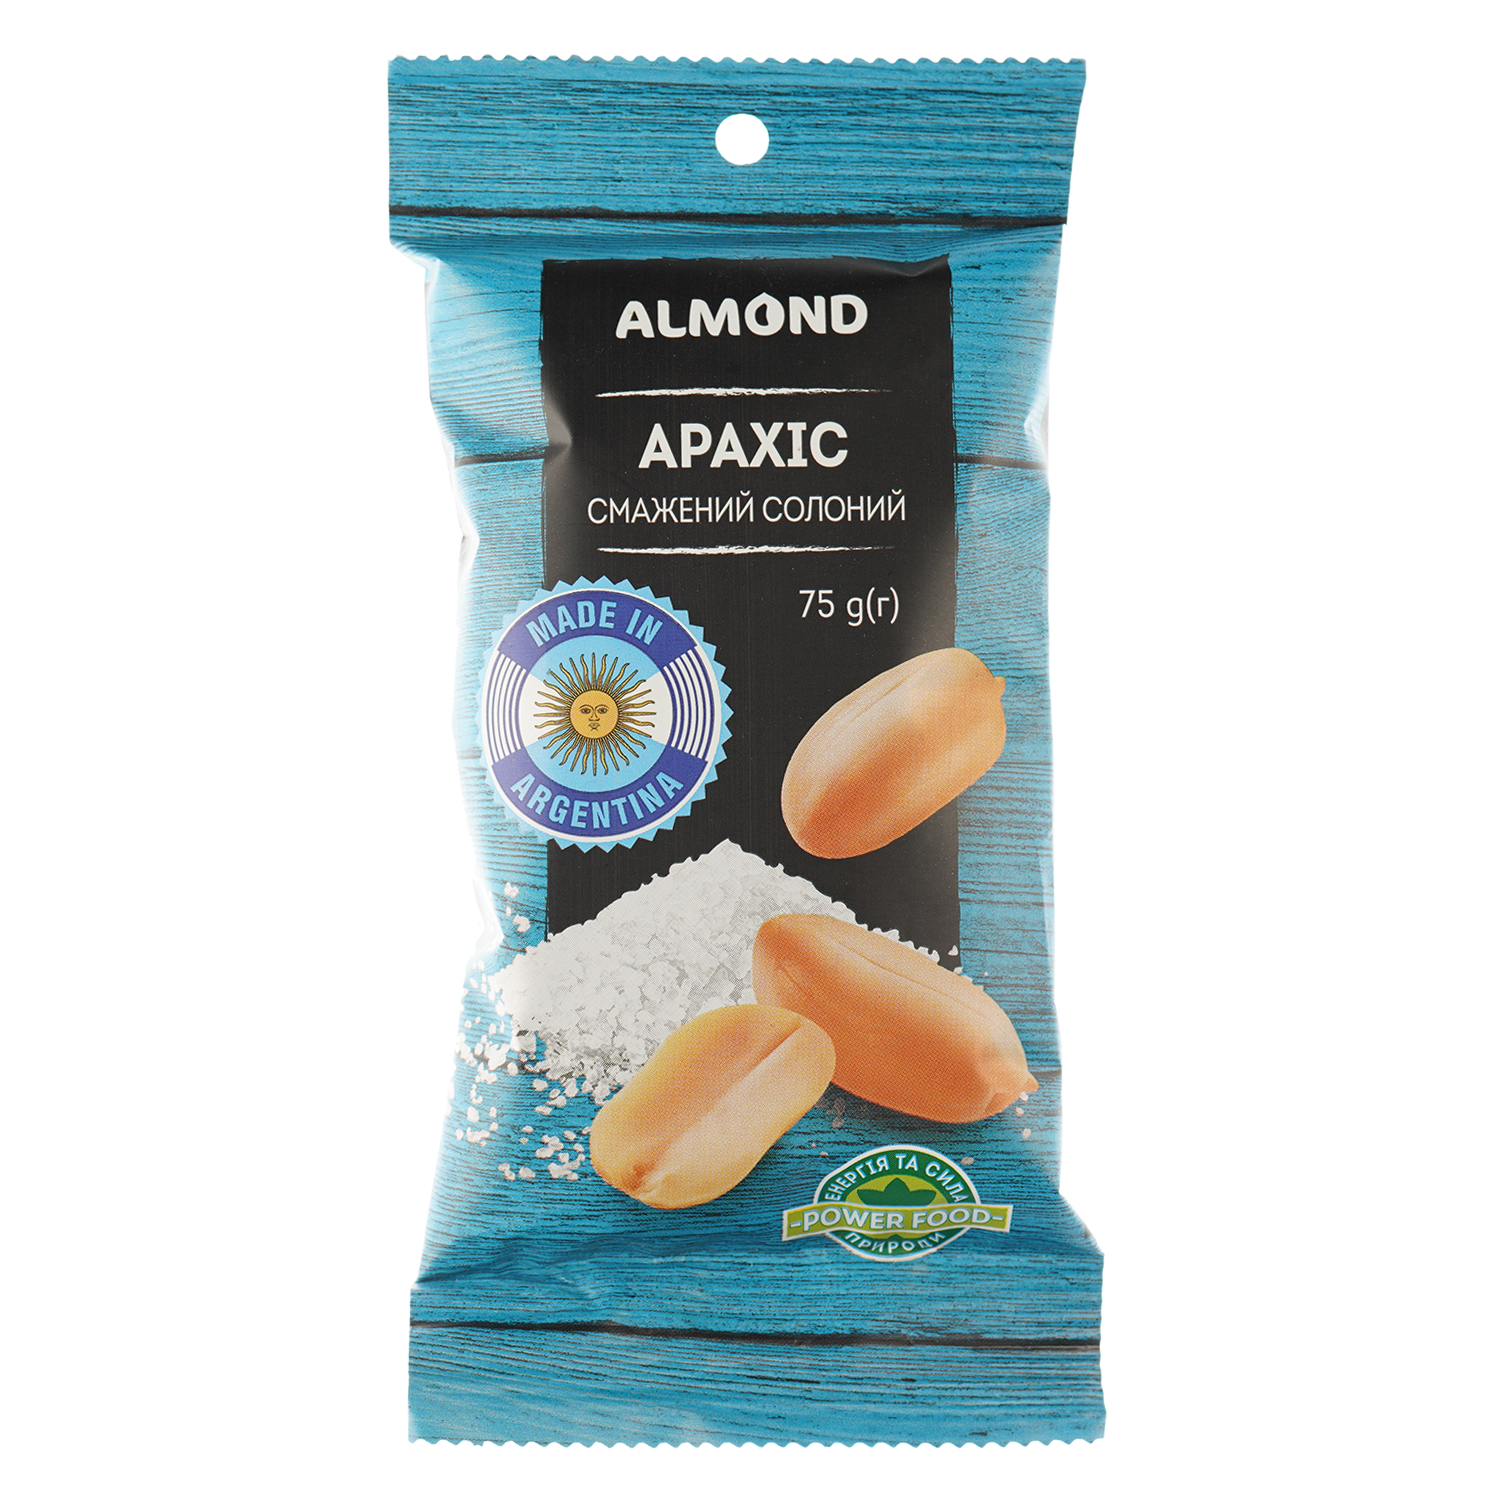 Арахис Almond жареный соленый 75 г (930640) - фото 1